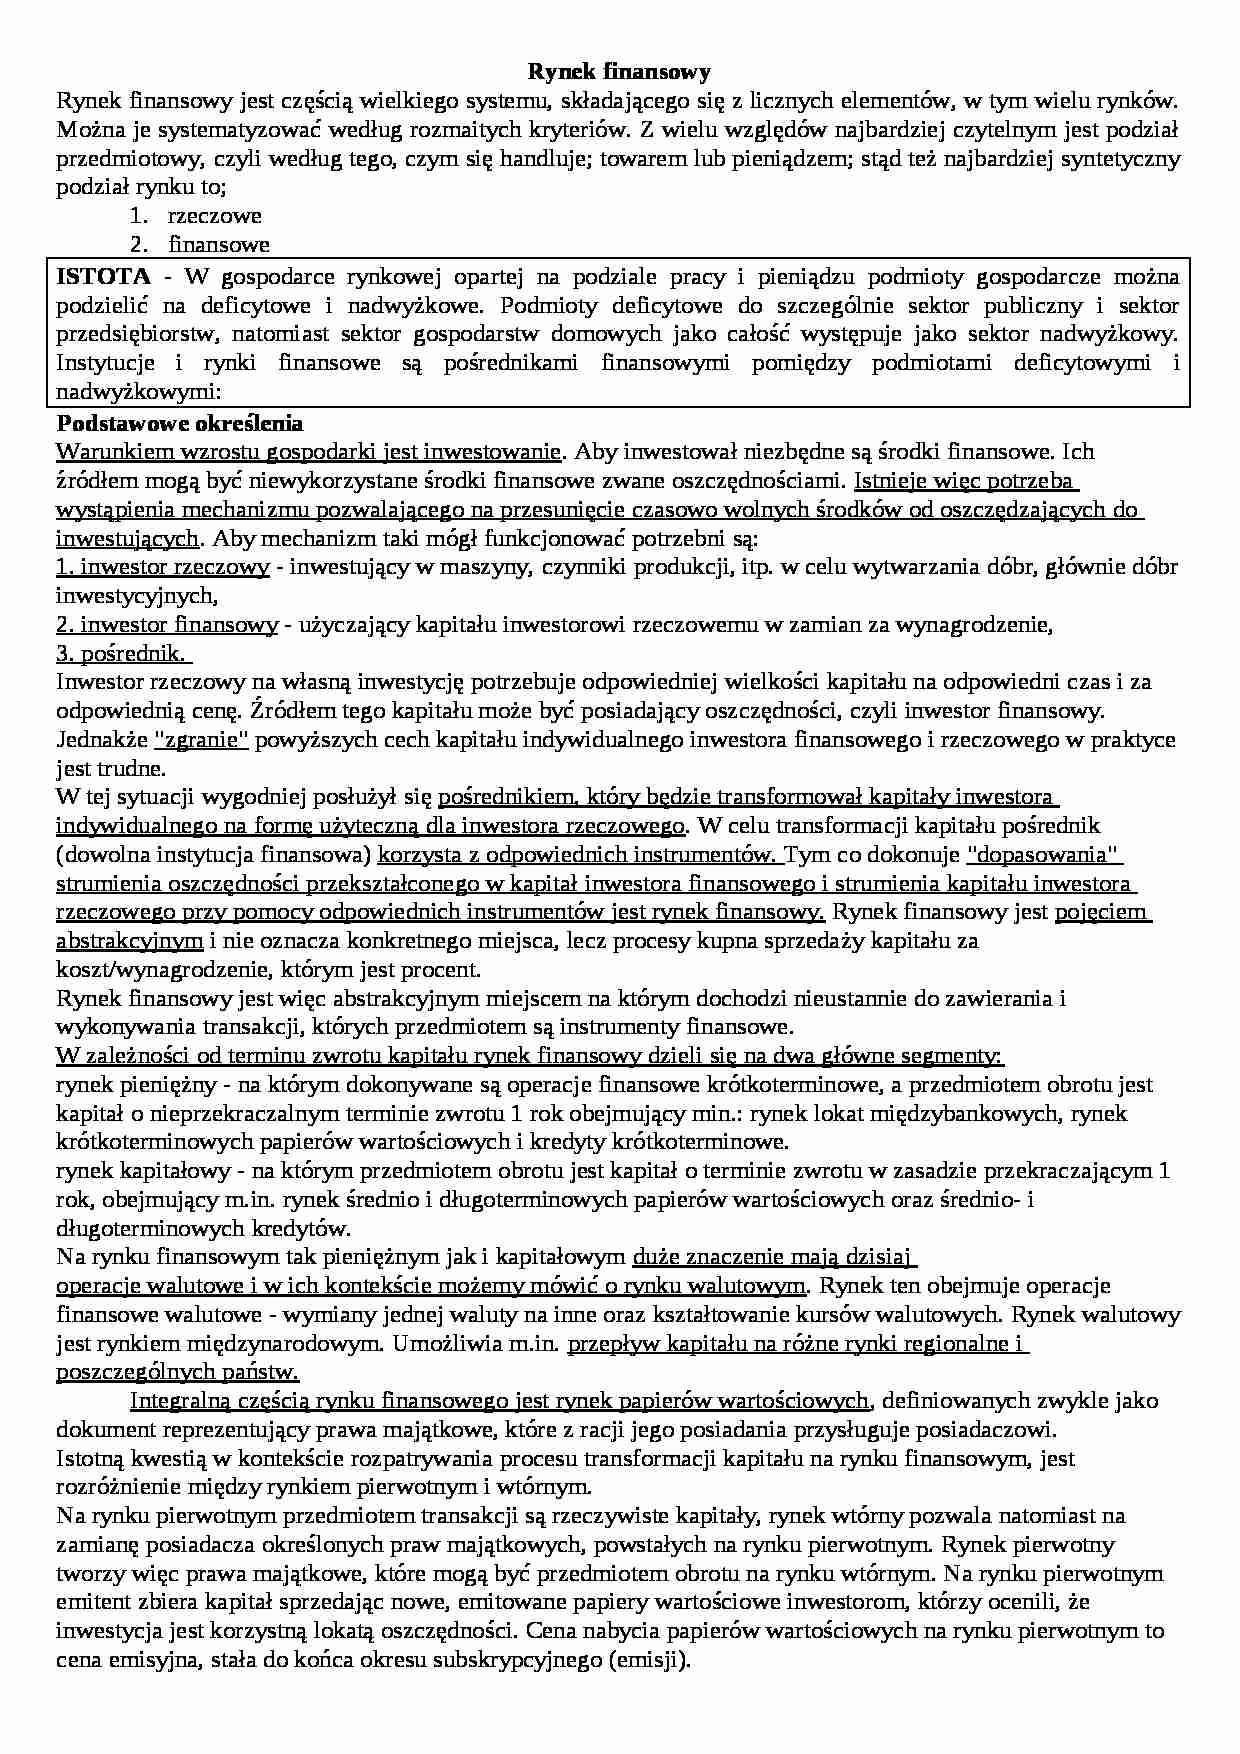 Rynki finansowe - Instytucje polskiego rynku kapitałowego - strona 1